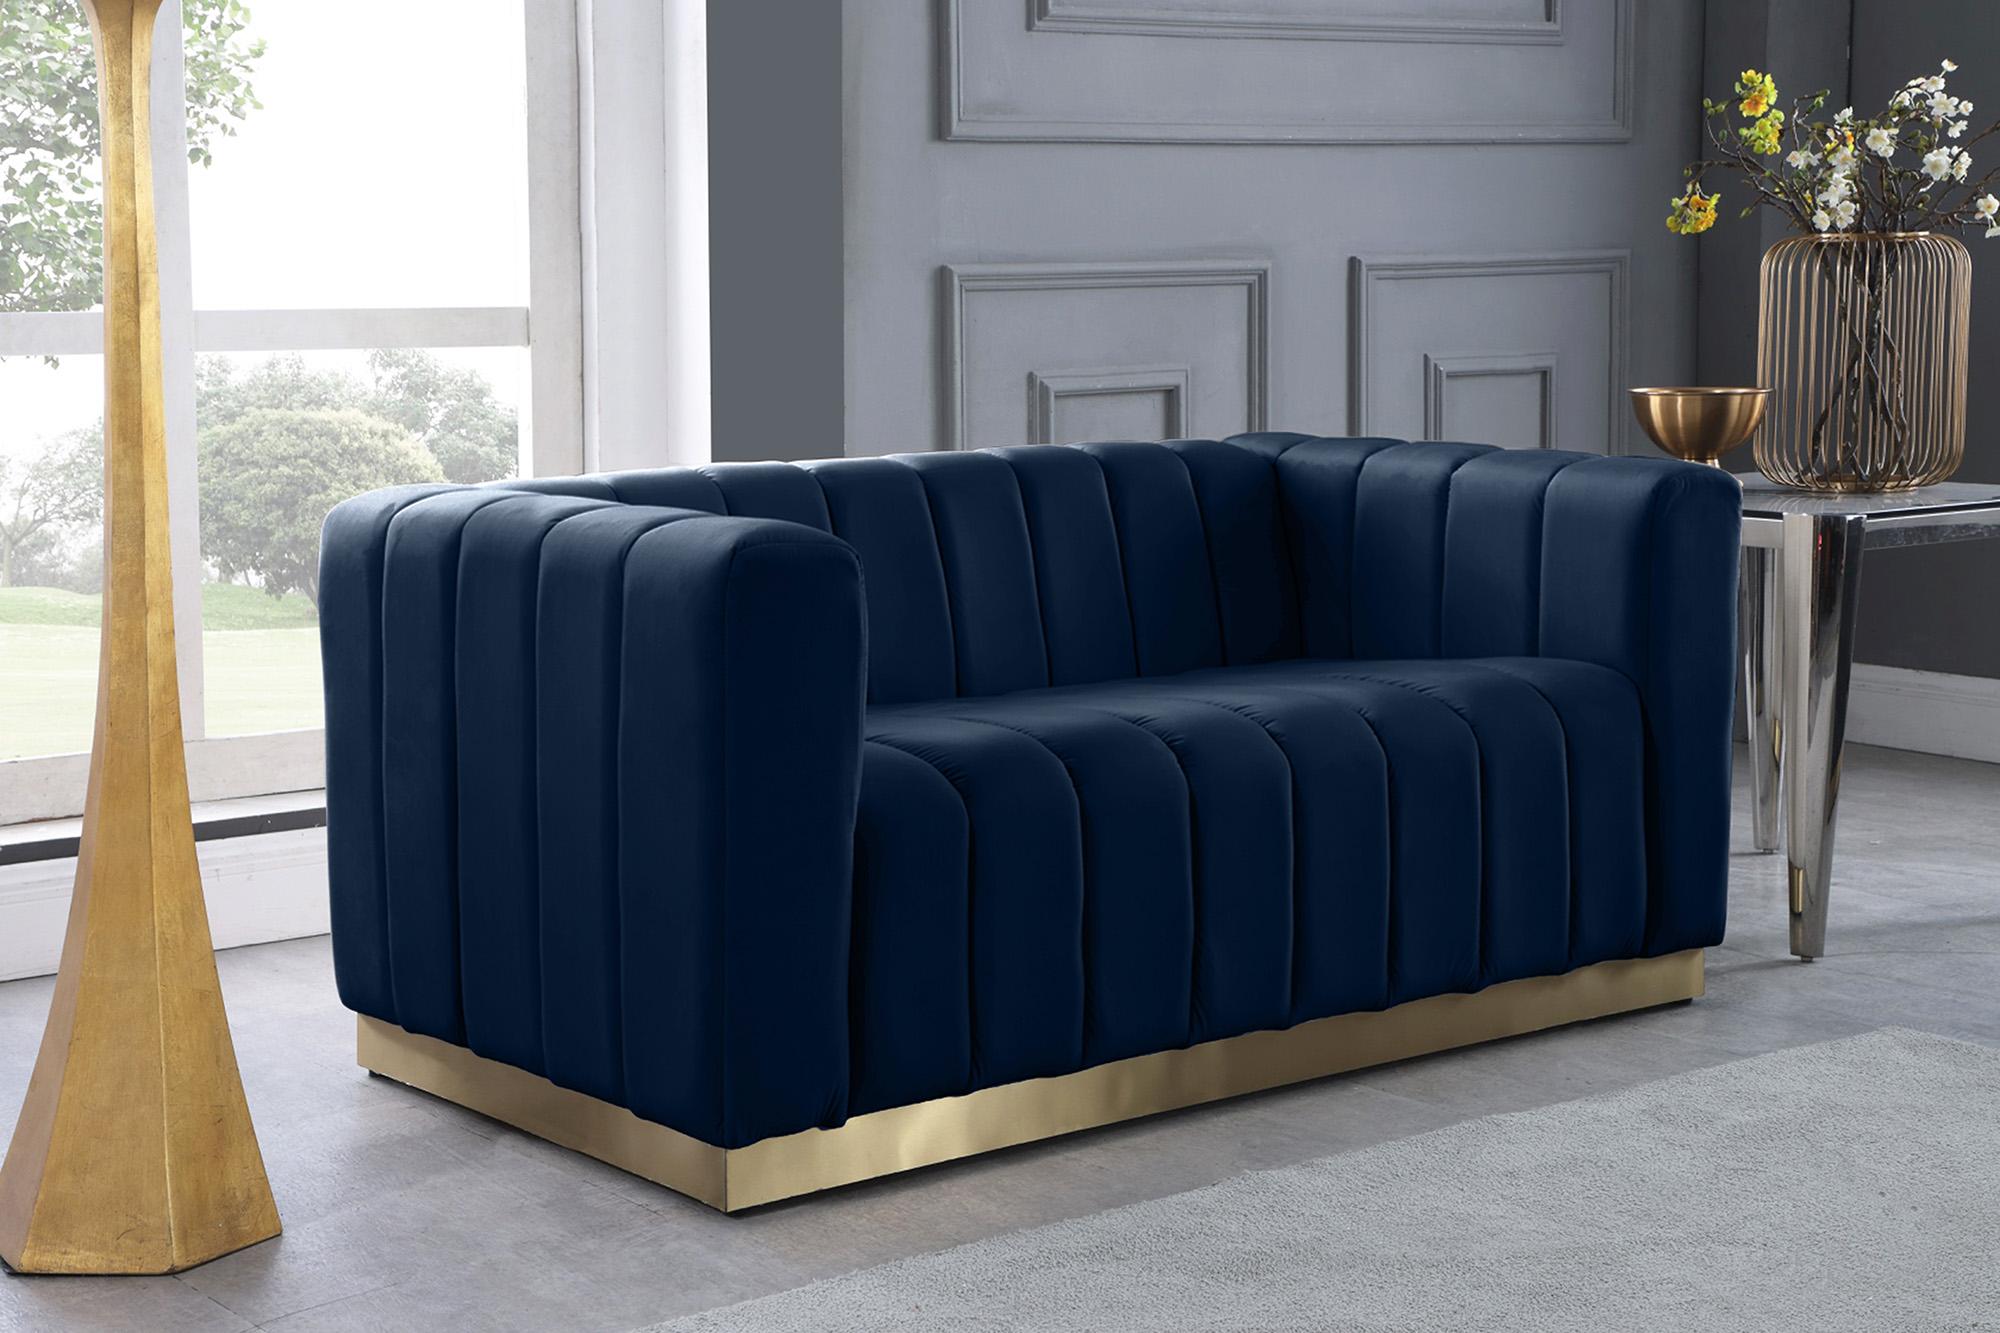 

    
Glam Navy Velvet Channel Tufted Sofa Set 3Pcs MARLON 603Navy-S Meridian Modern
